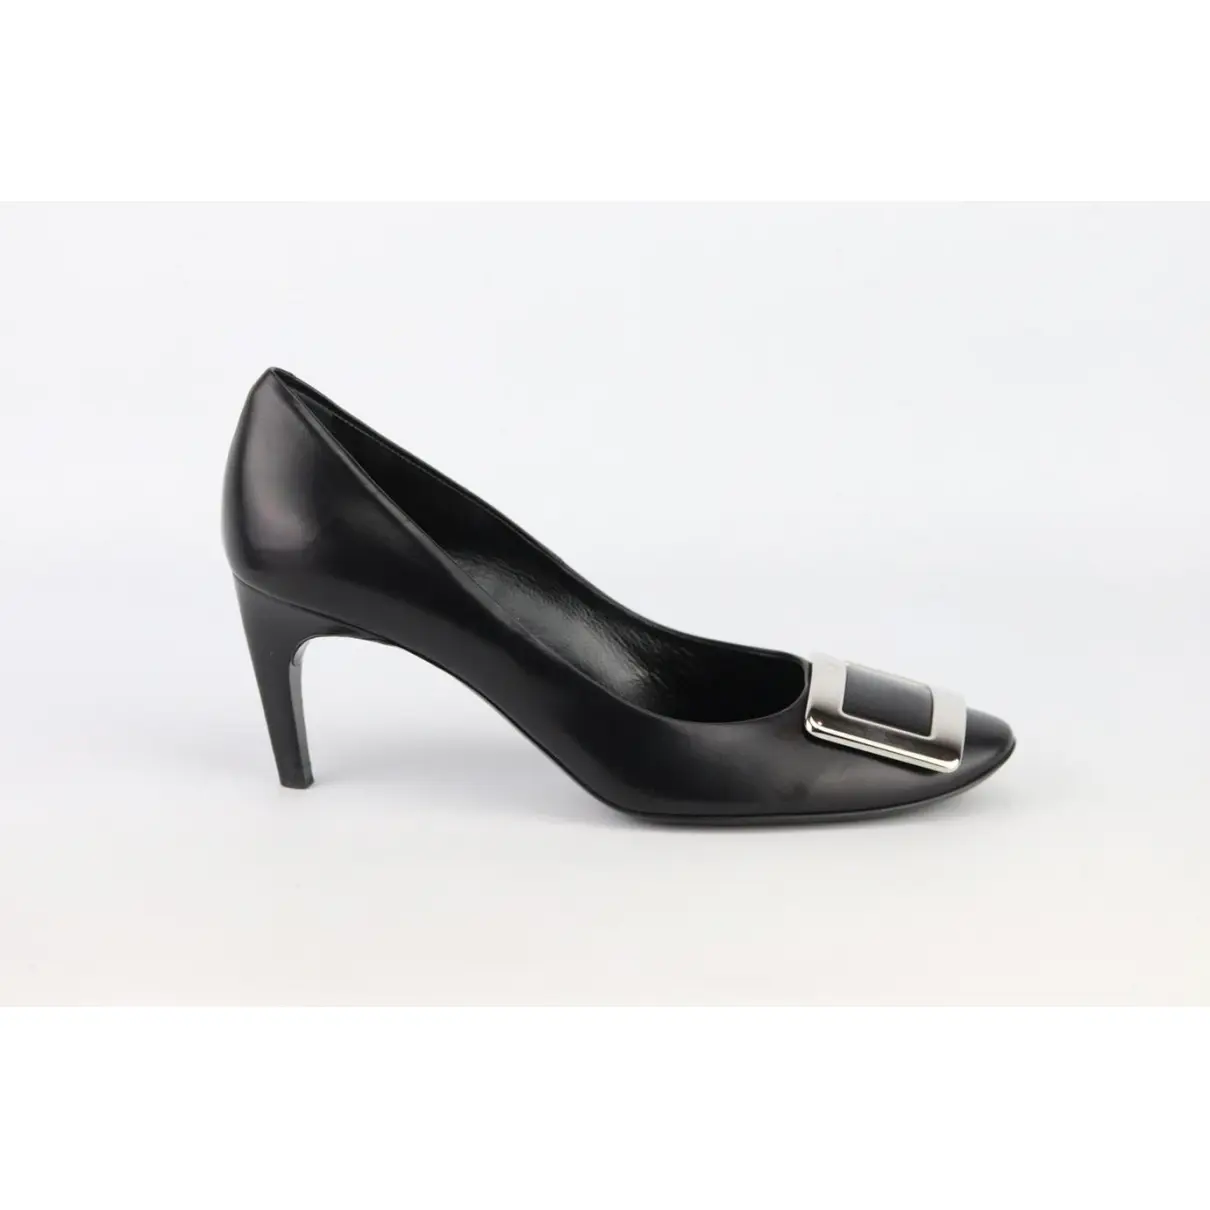 Buy Roger Vivier Leather heels online